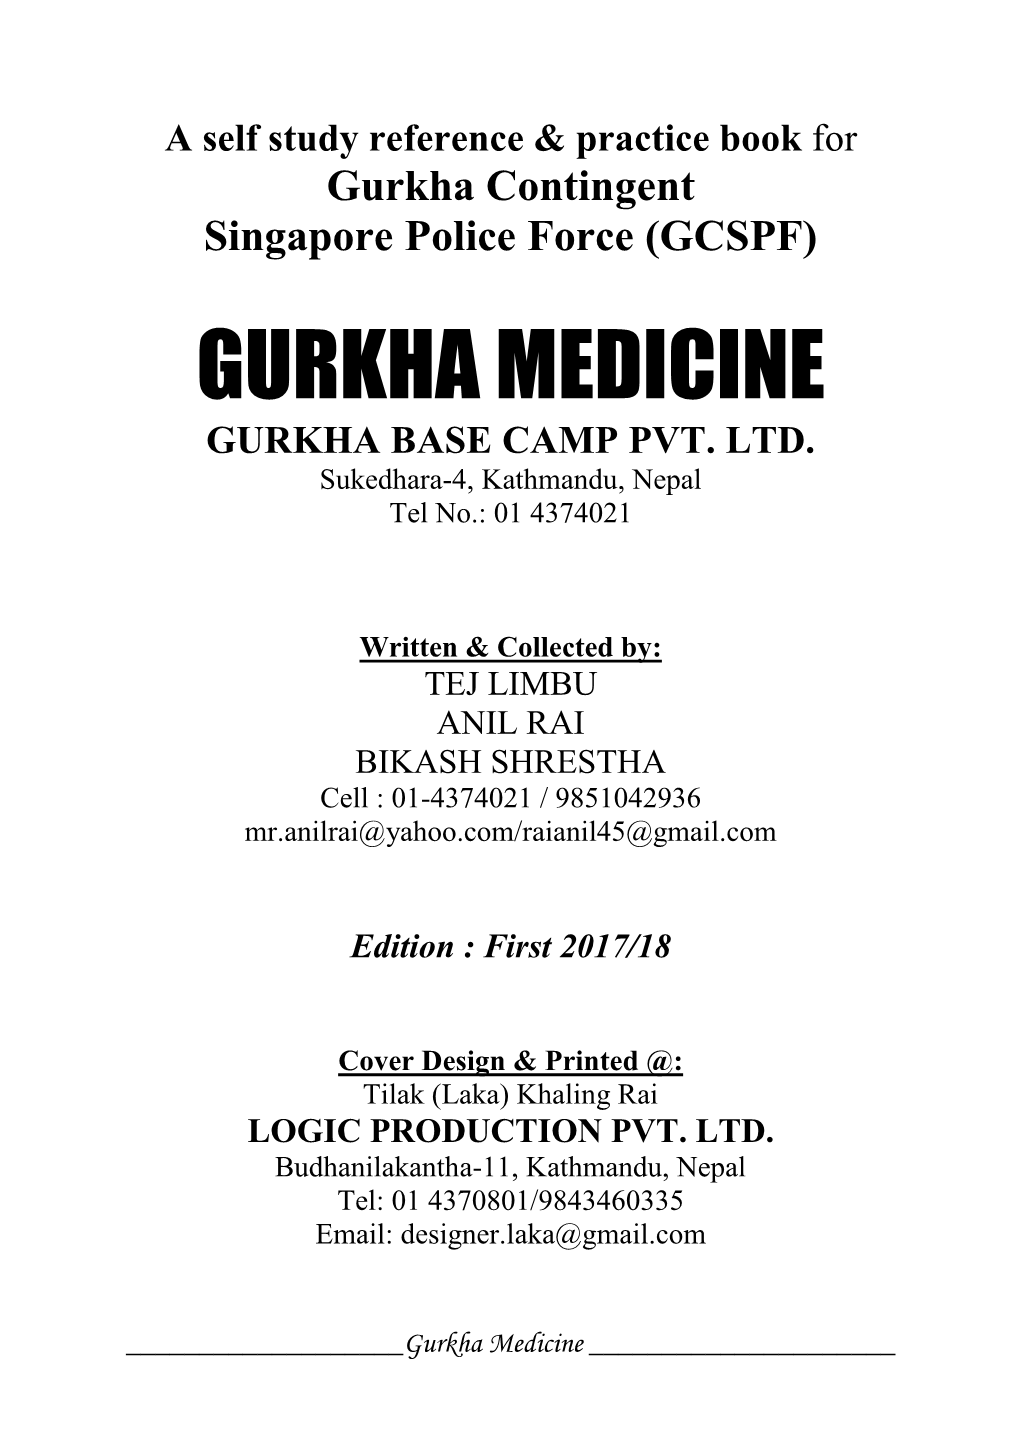 Gurkha Medicine Gurkha Base Camp Pvt